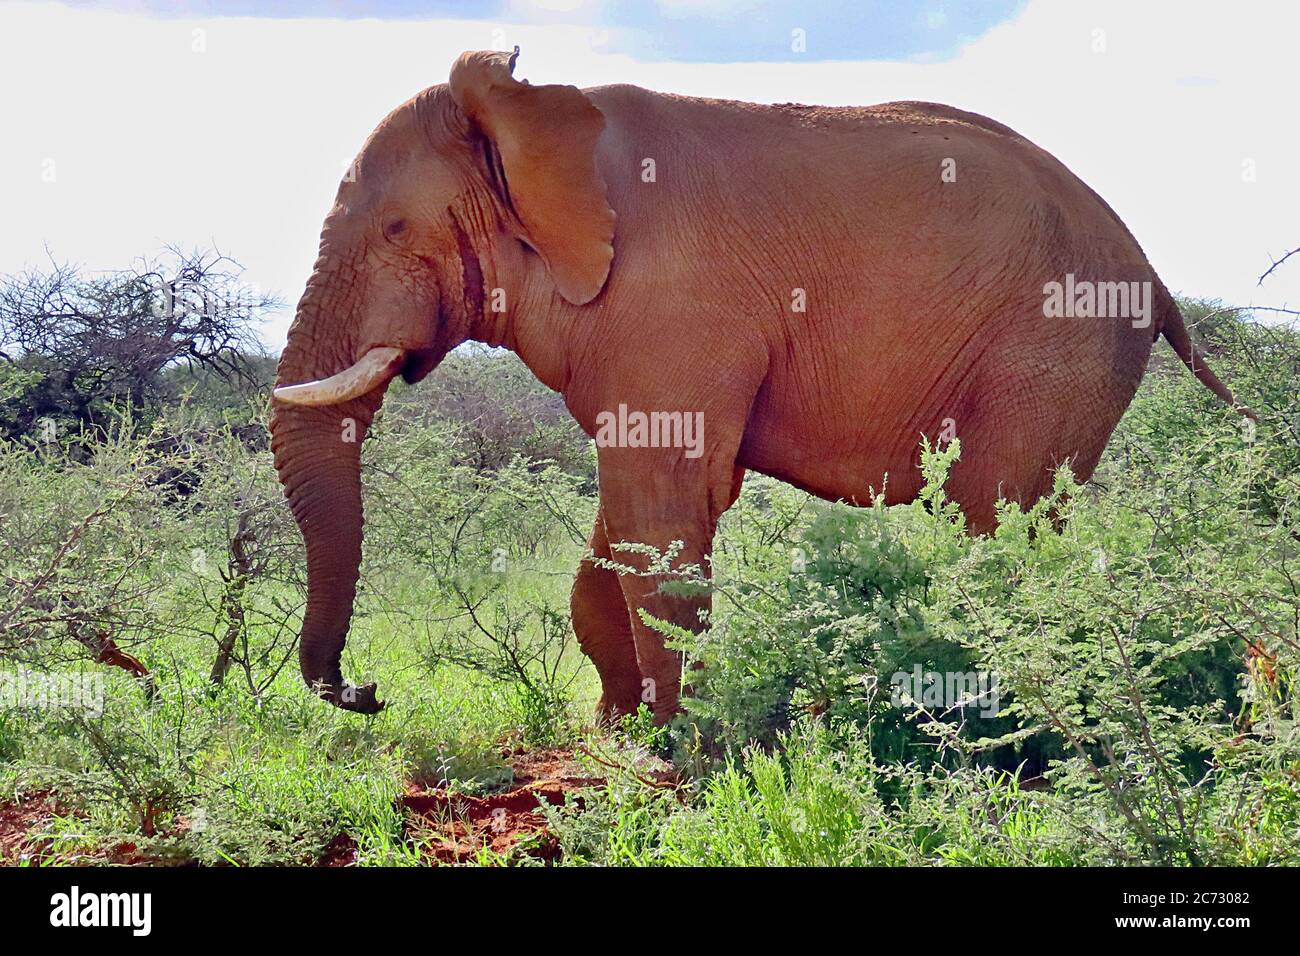 Un énorme éléphant de Bush africain (Loxodonta africanum) marchant dans le Bush de saison humide et les arbres de épine à la réserve d'Erindi, Omaruru, Namibie. Banque D'Images